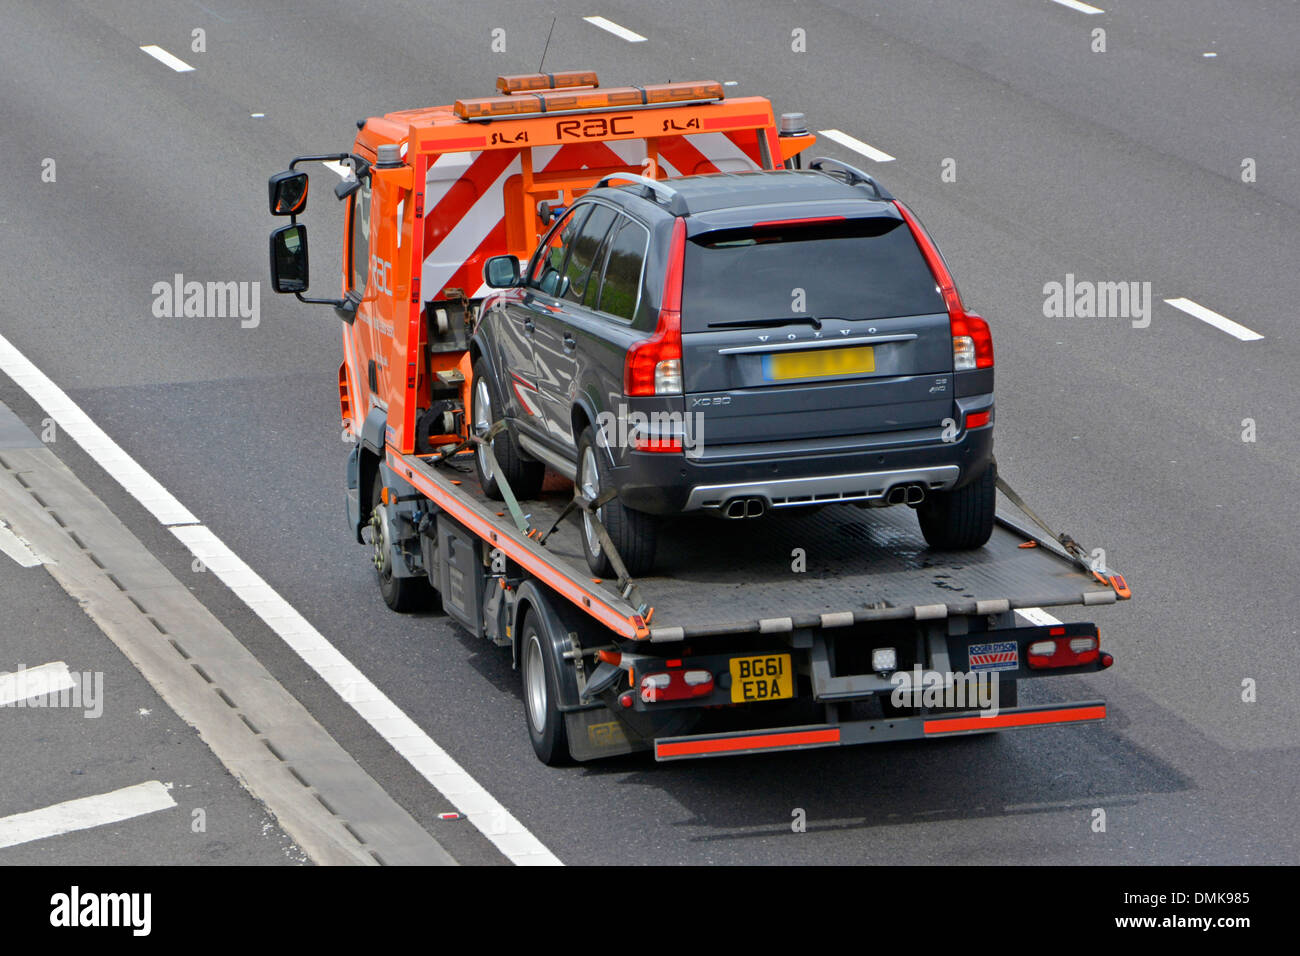 Vue arrière aérienne de l'entreprise de dépannage de camion de dépannage RAC transportant une voiture Volvo conduisant le long de la route autoroutière britannique M25 Essex Angleterre Royaume-Uni Banque D'Images